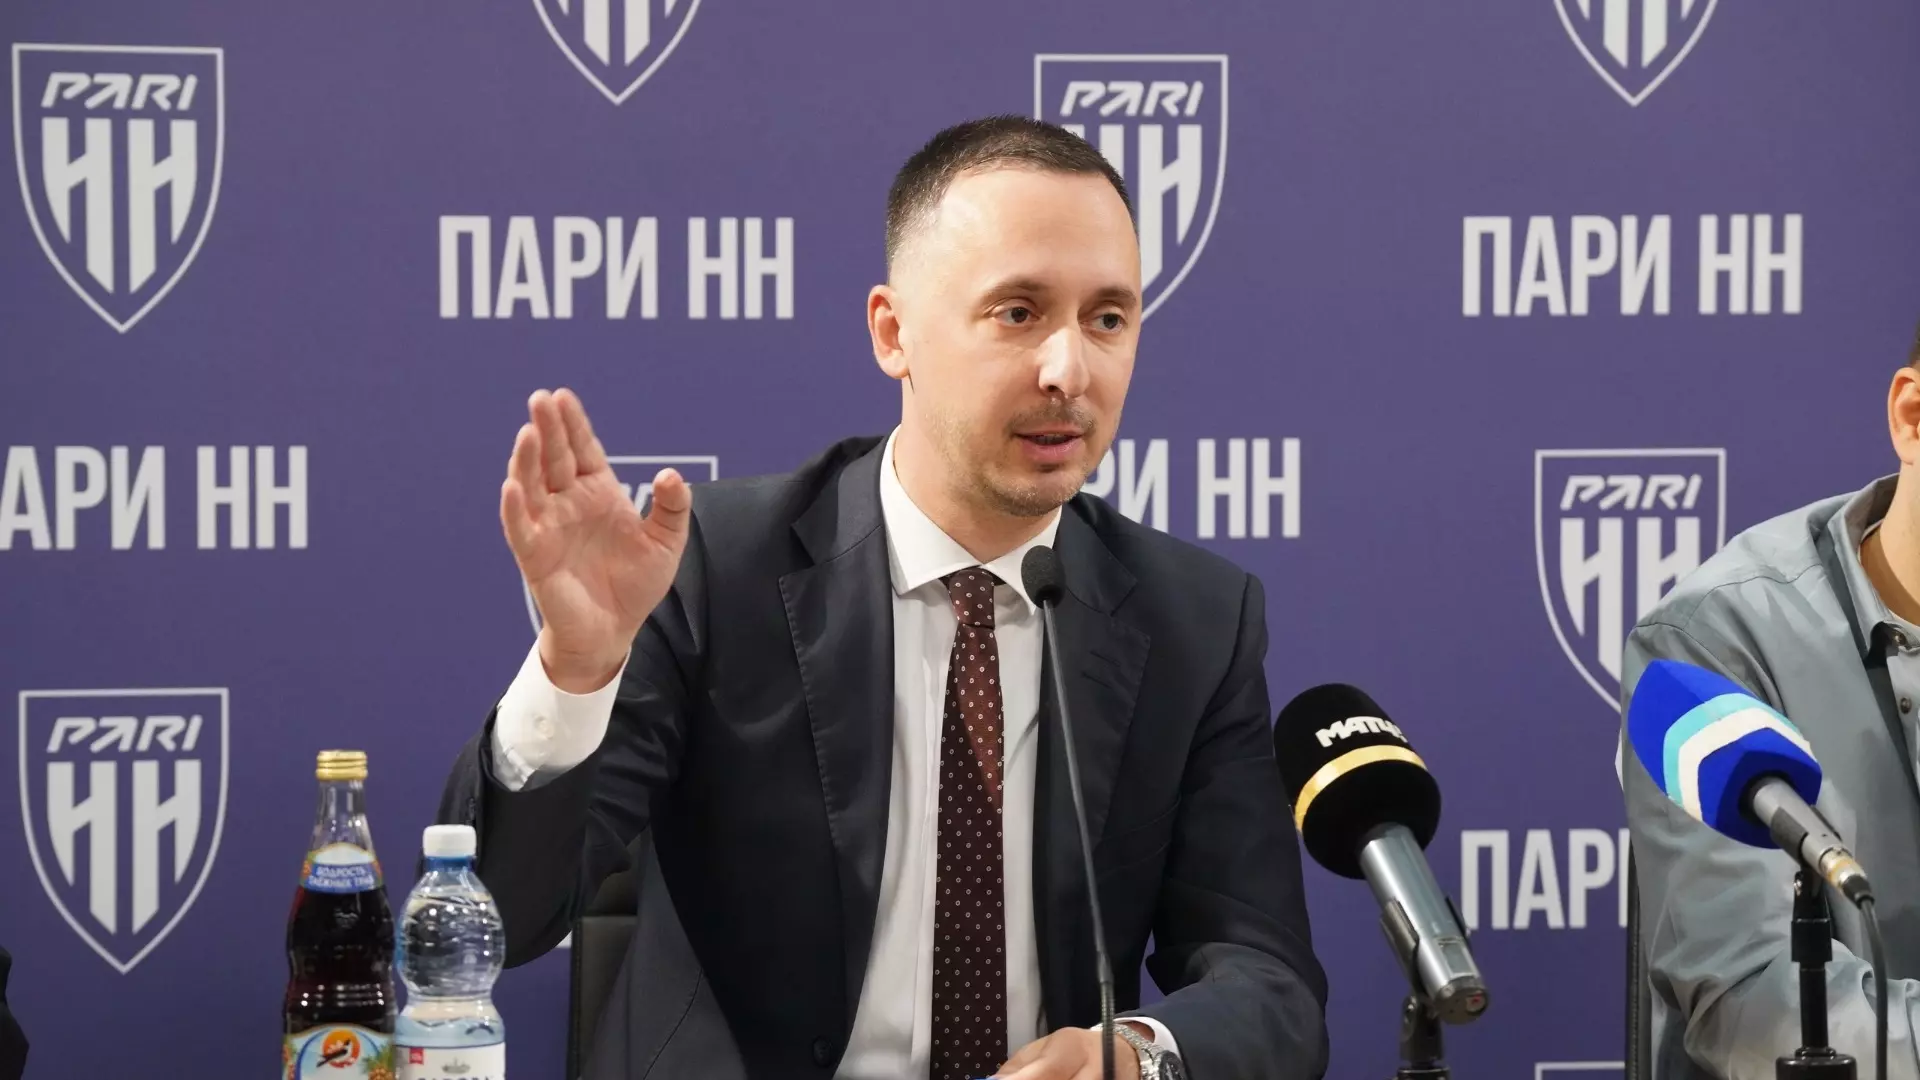 Гендиректор ФК «Пари НН» не нашел оскорбительным мат Юрана на судей